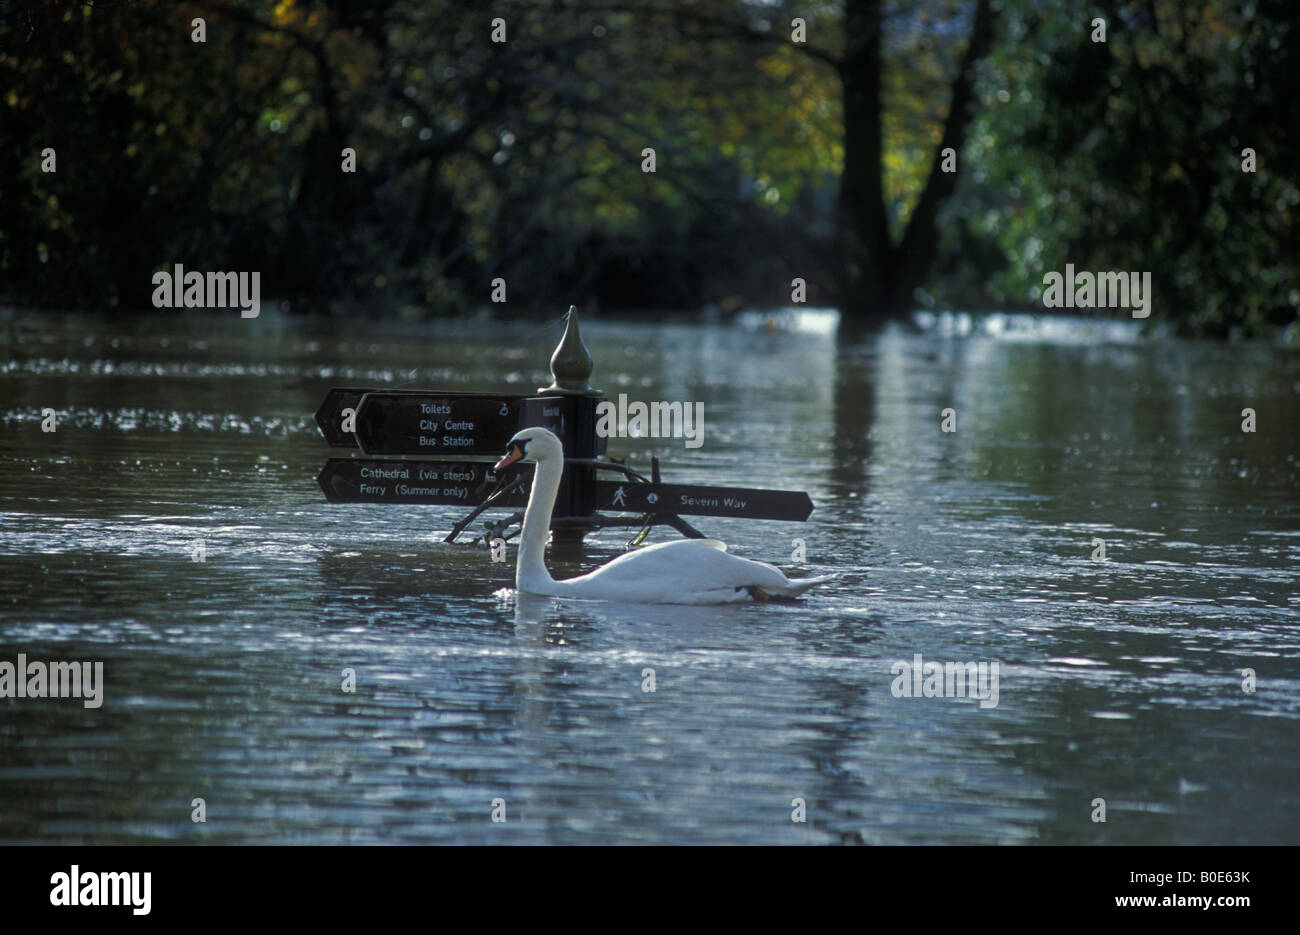 Les inondations sur la rivière Severn Worcester Angleterre Novembre 2000 Banque D'Images